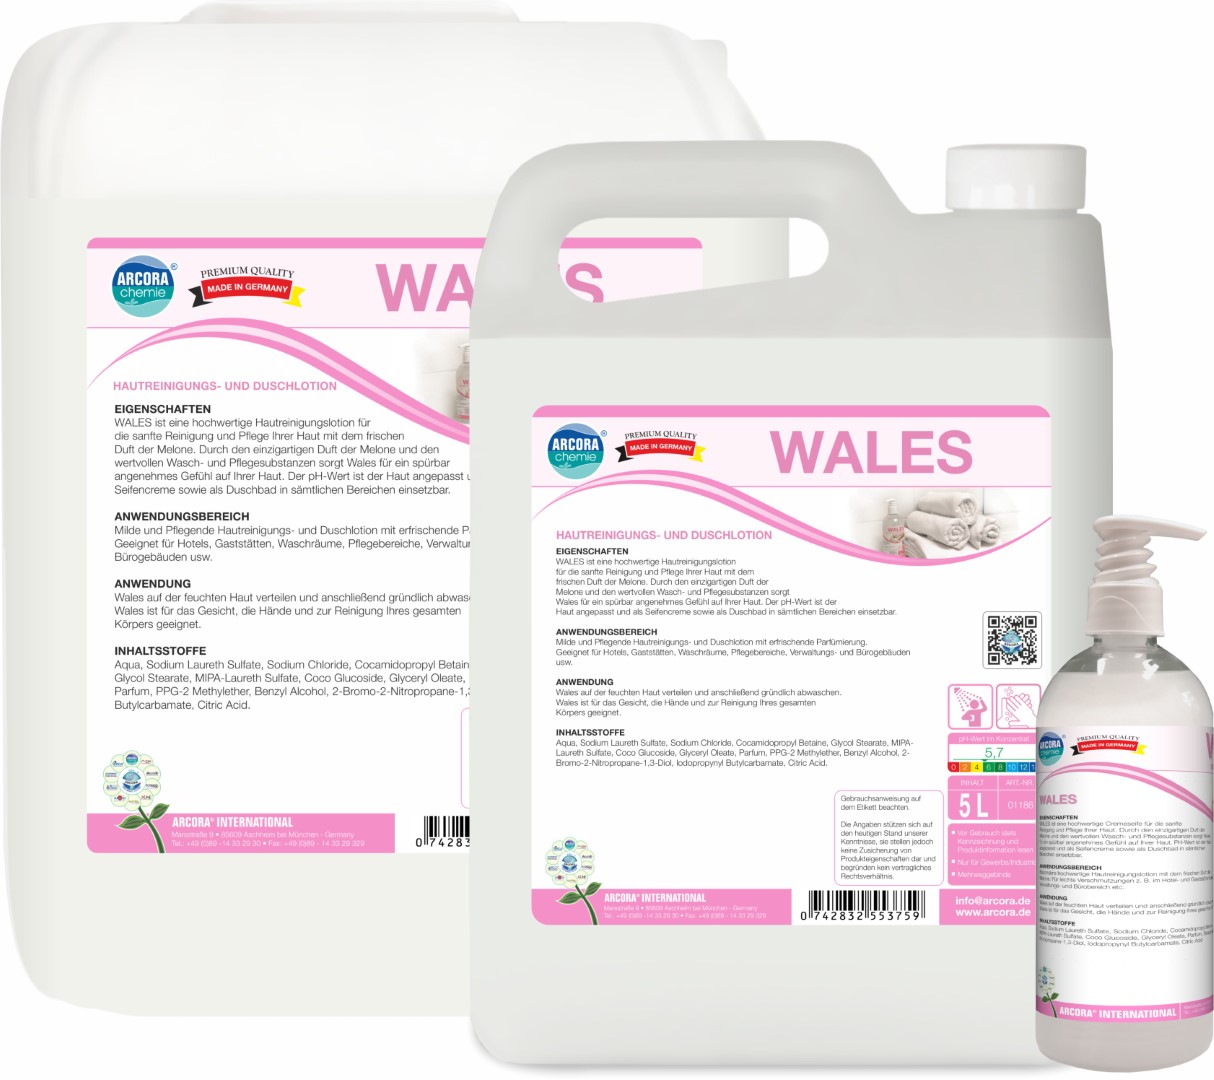 Wales | Hautreinigungs- & Duschlotion | 5 Liter Kanister